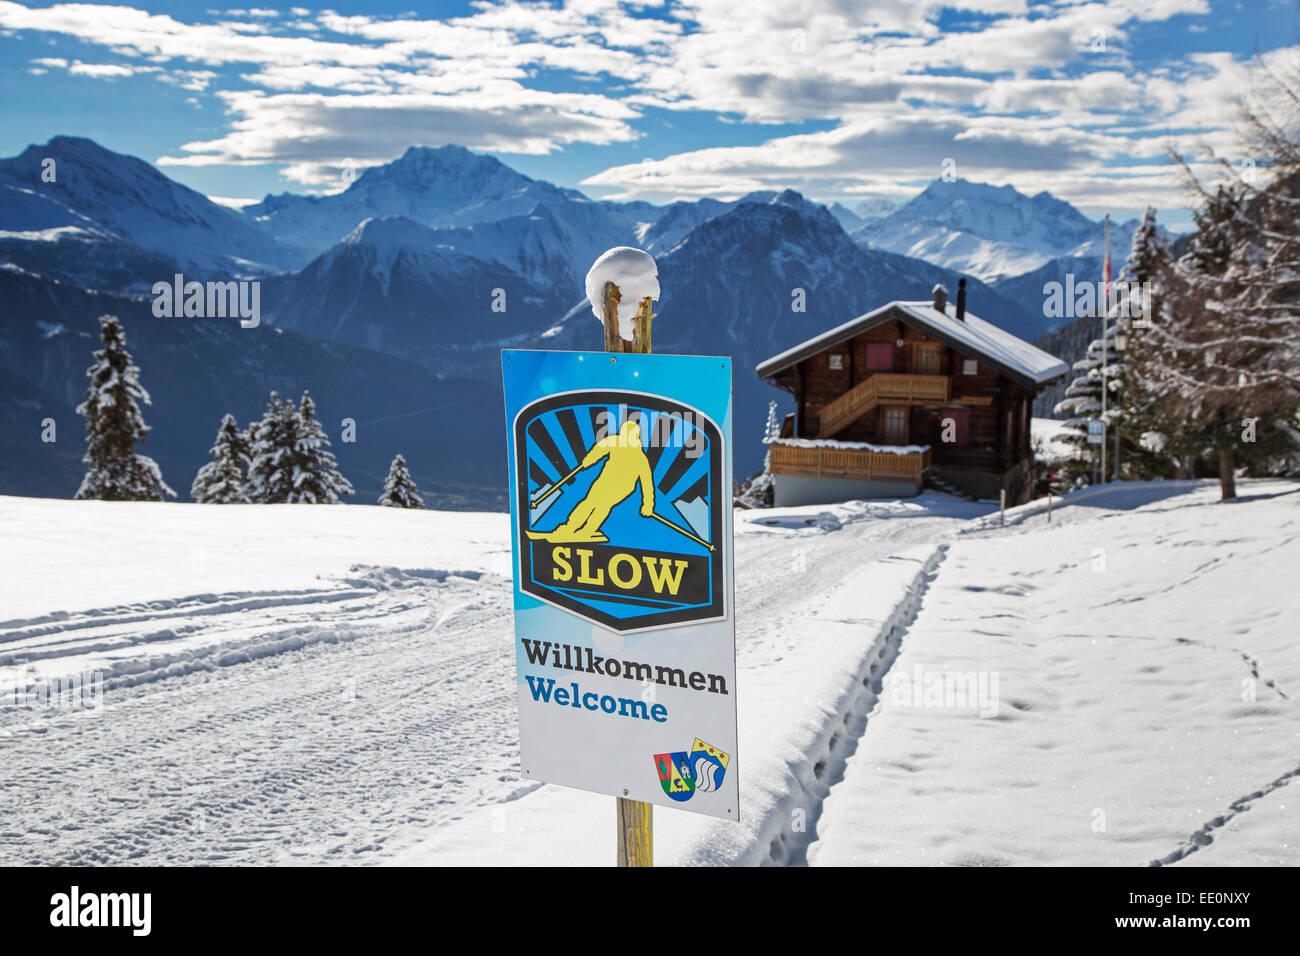 Panneau de bienvenue au ski skieurs exhortant lentement dans la station de ski alpin dans les Alpes Suisses en hiver Banque D'Images